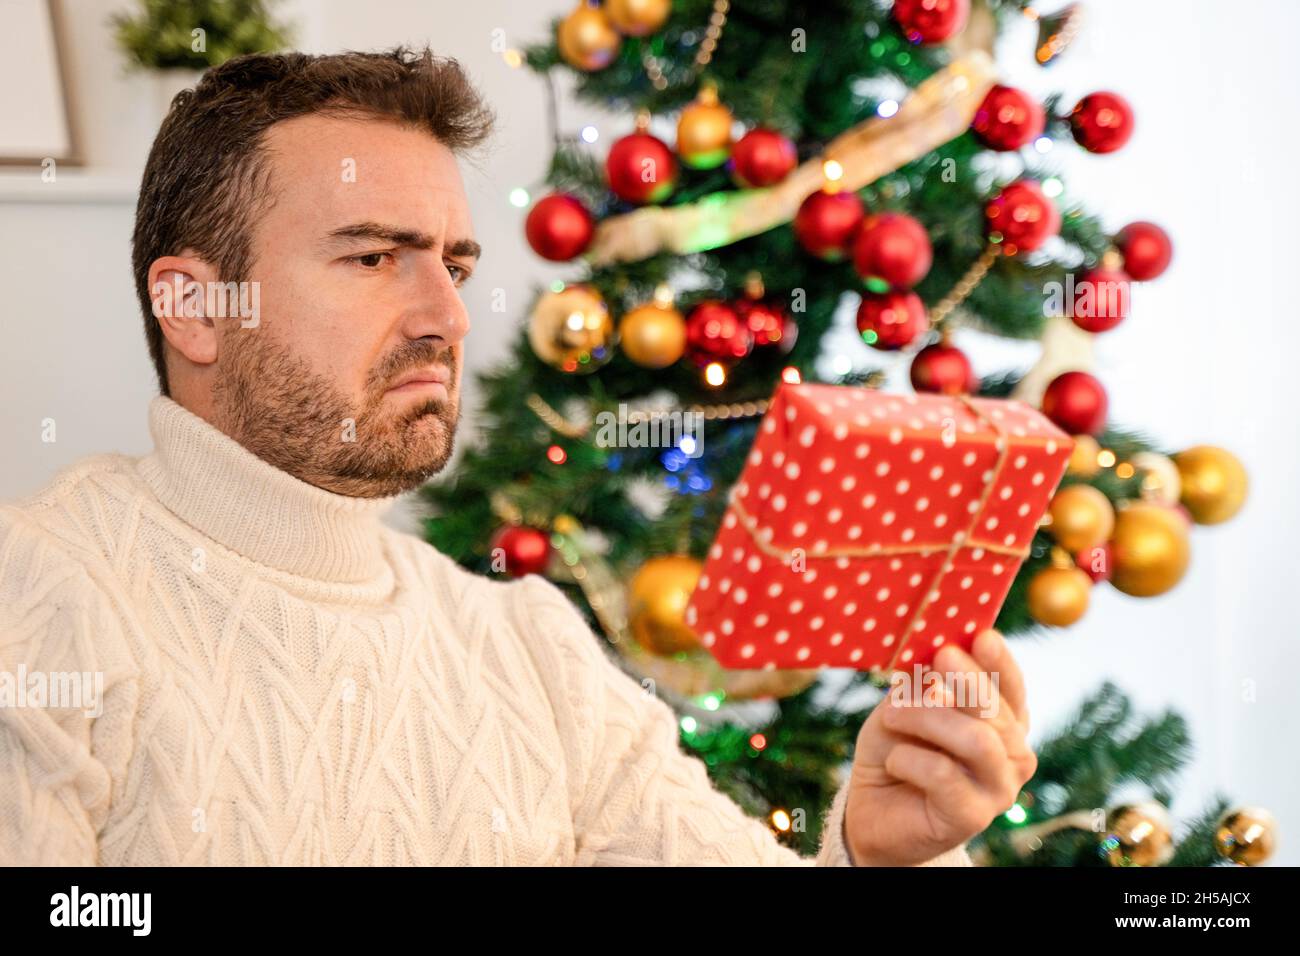 Un homme se sent déçu pour un mauvais cadeau de Noël Banque D'Images